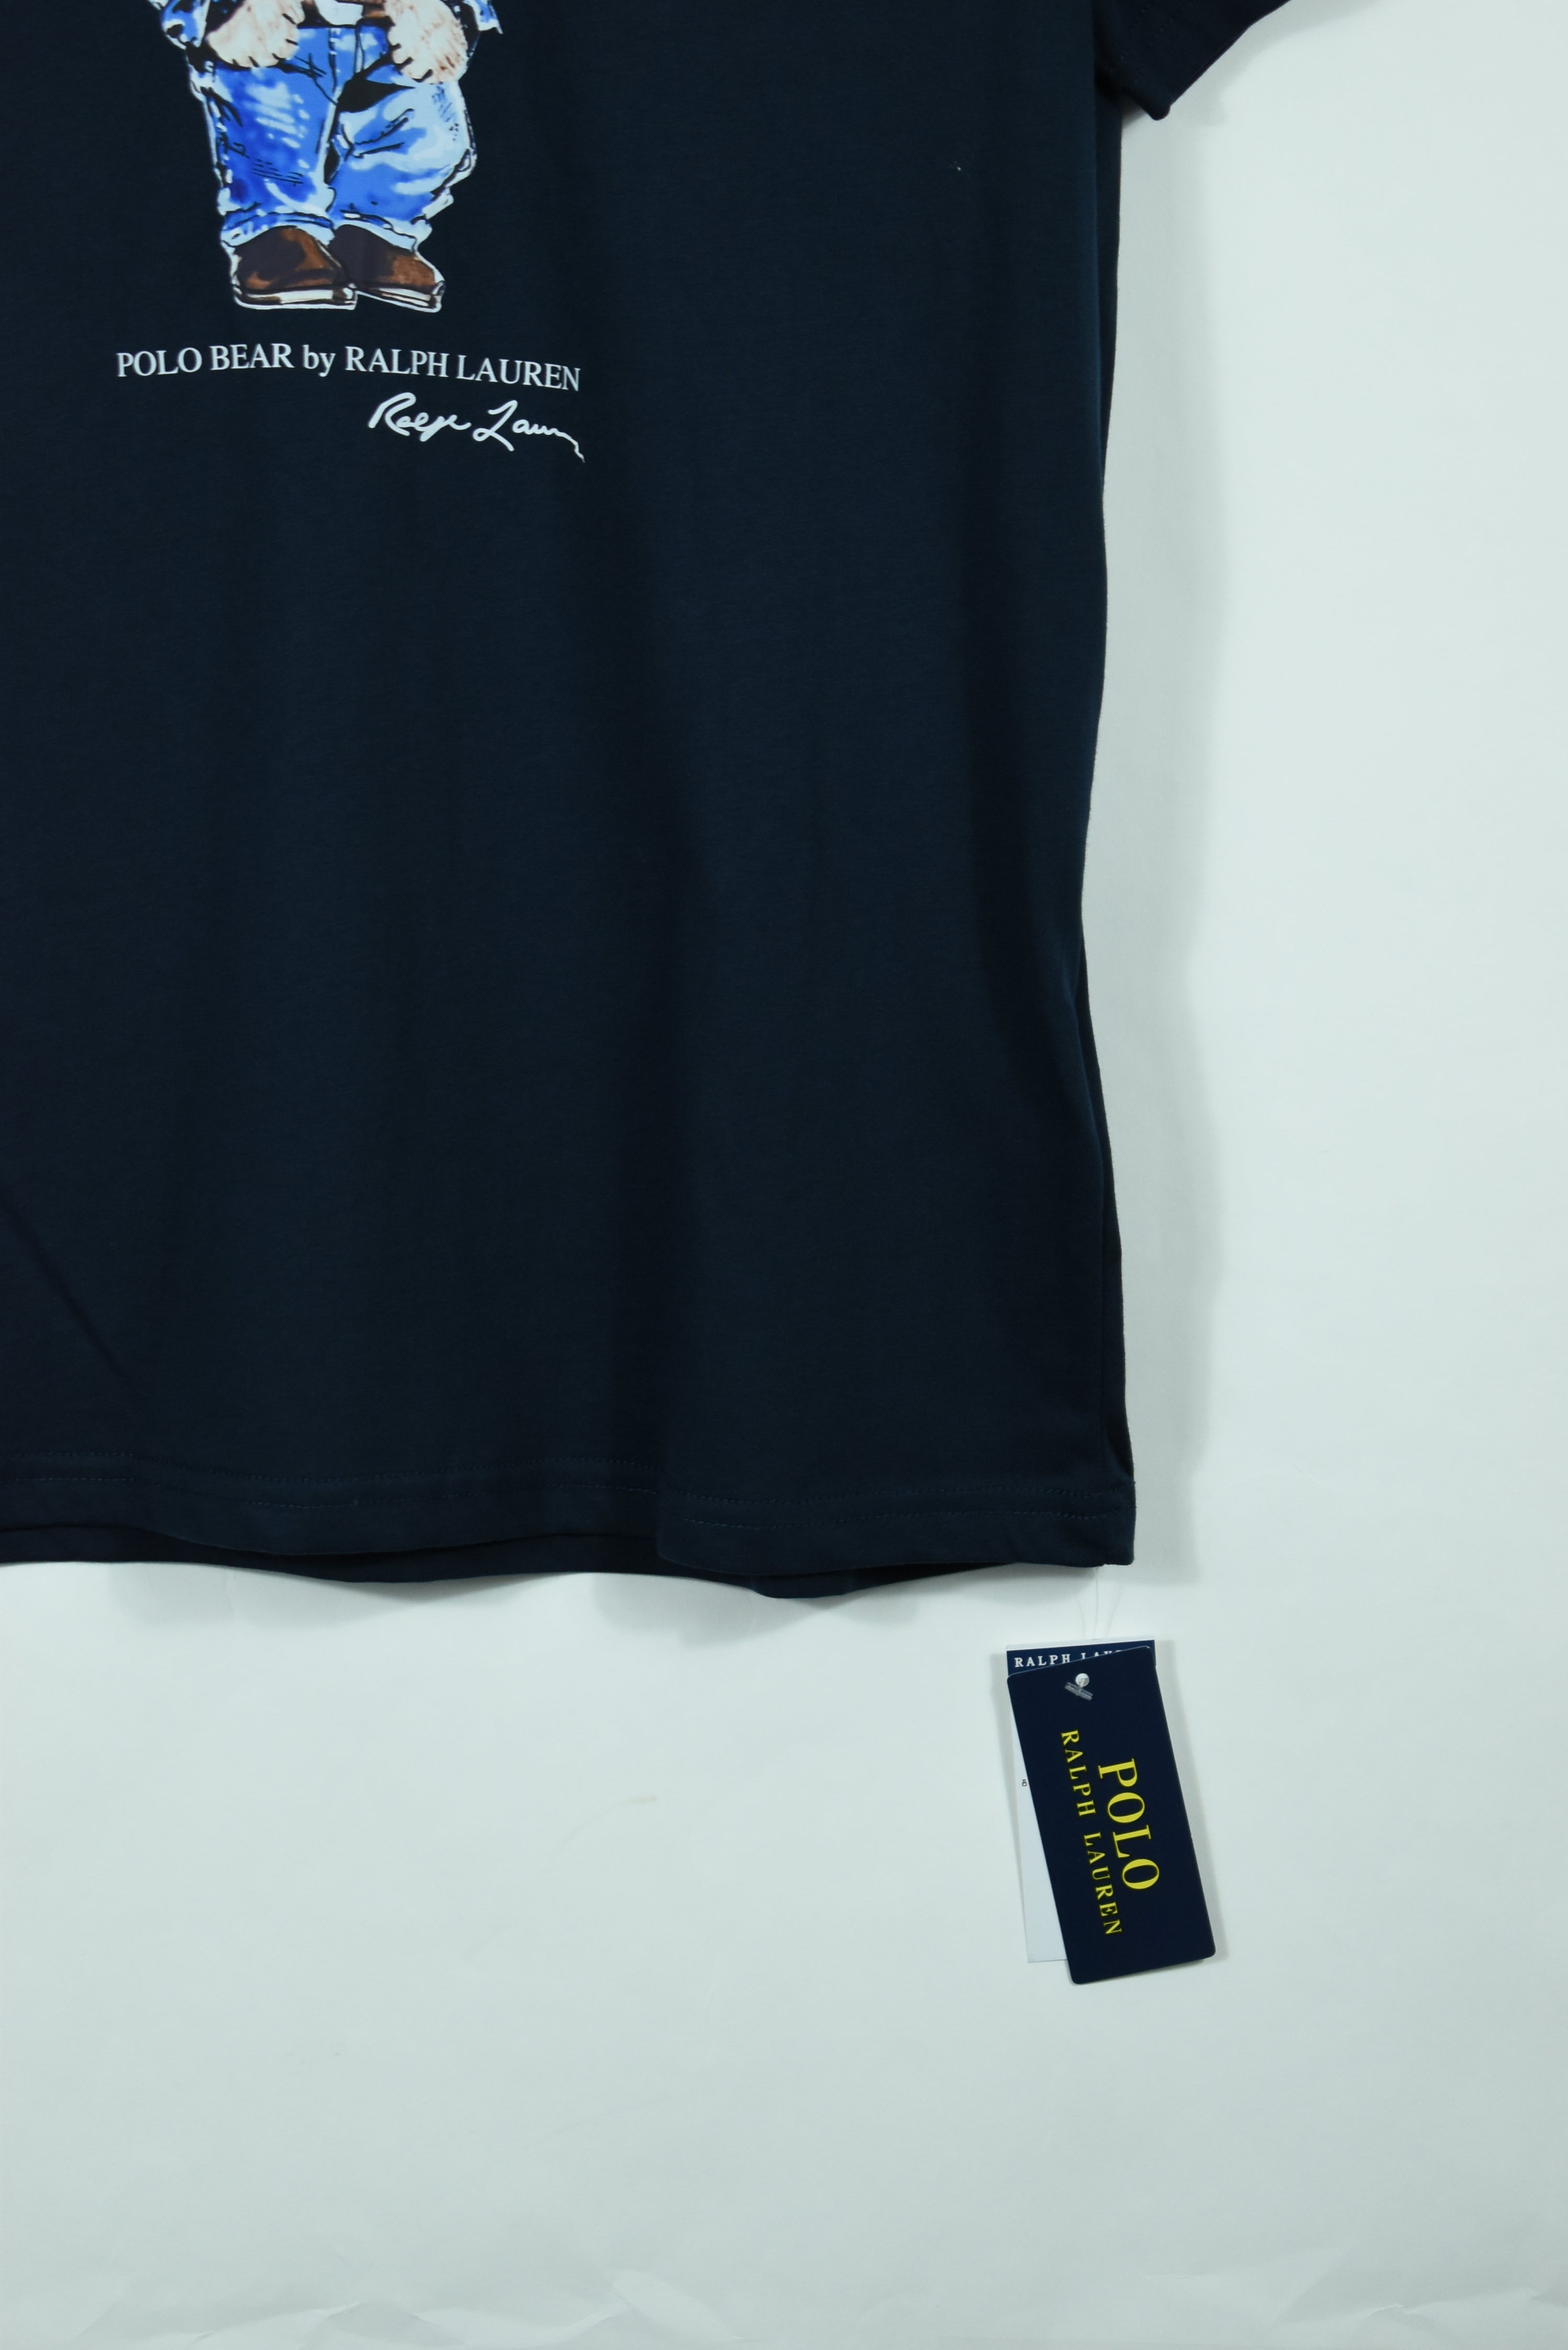 New Ralph Lauren Polo Bear T Shirt Navy Medium